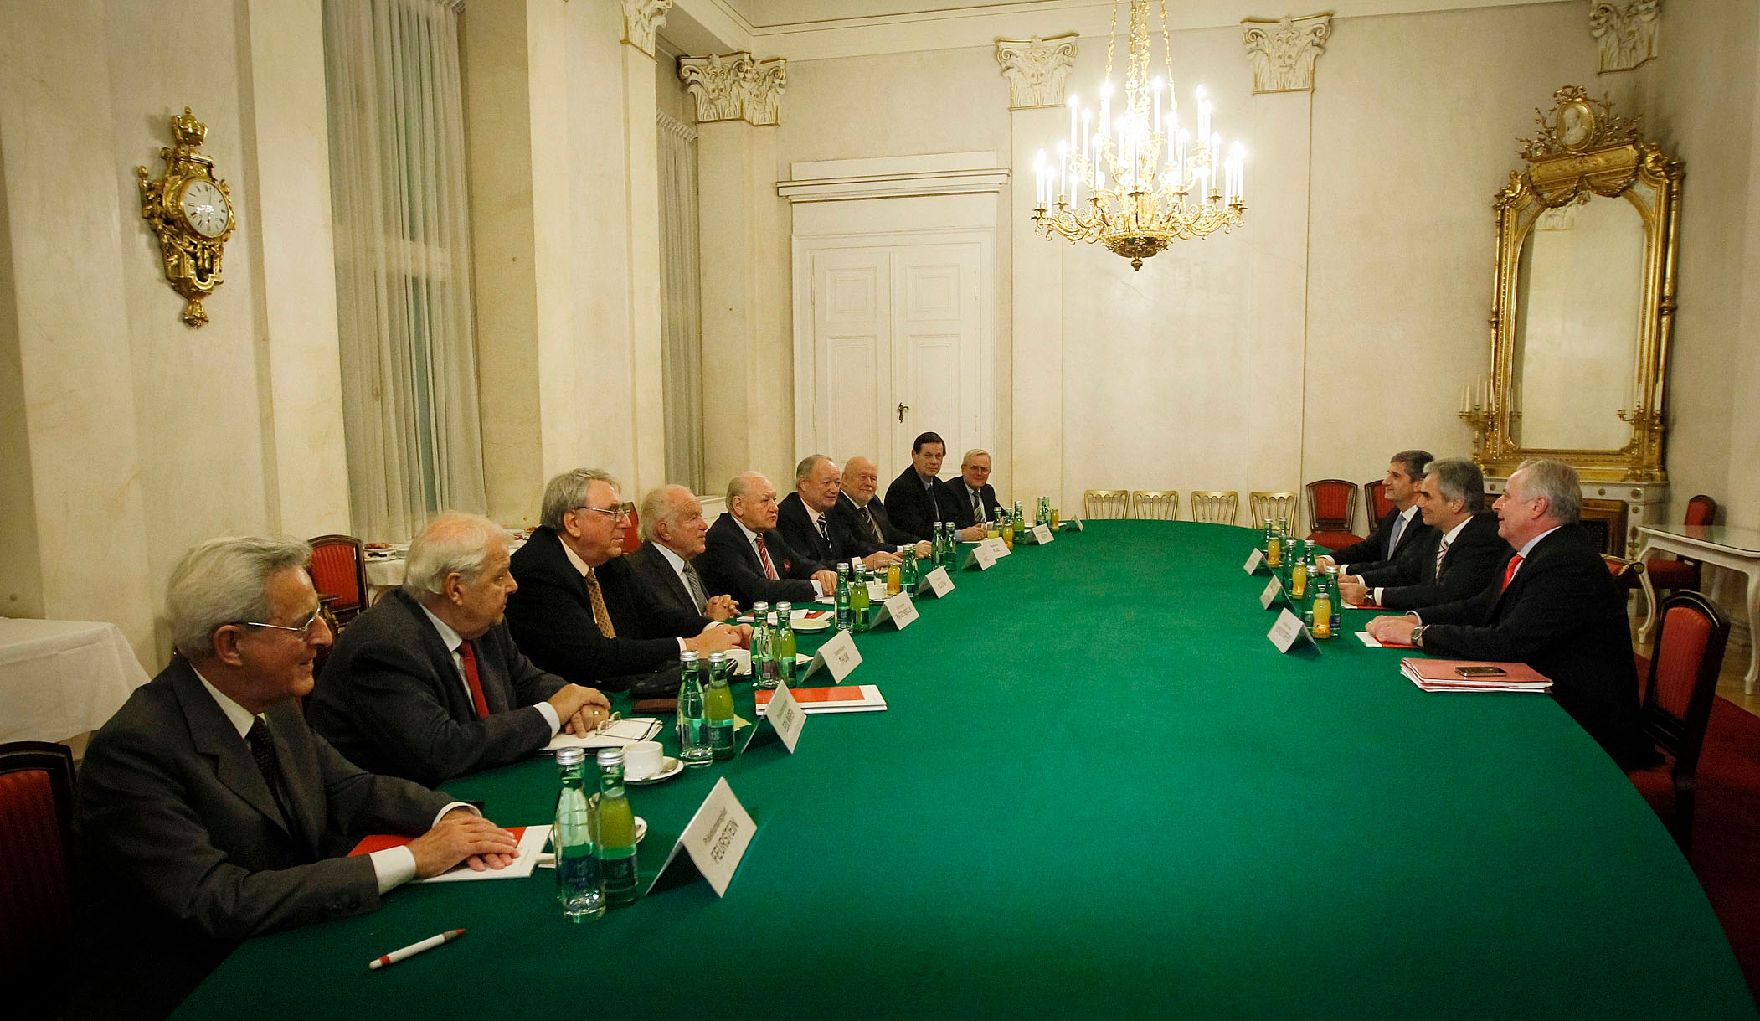 Am 3. Dezember 2012 fanden im Bundeskanzleramt Gespräche zwischen Vertretern der österreichischen Bundesregierung und des Seniorenrates zu den Pensionsanpassungen statt.